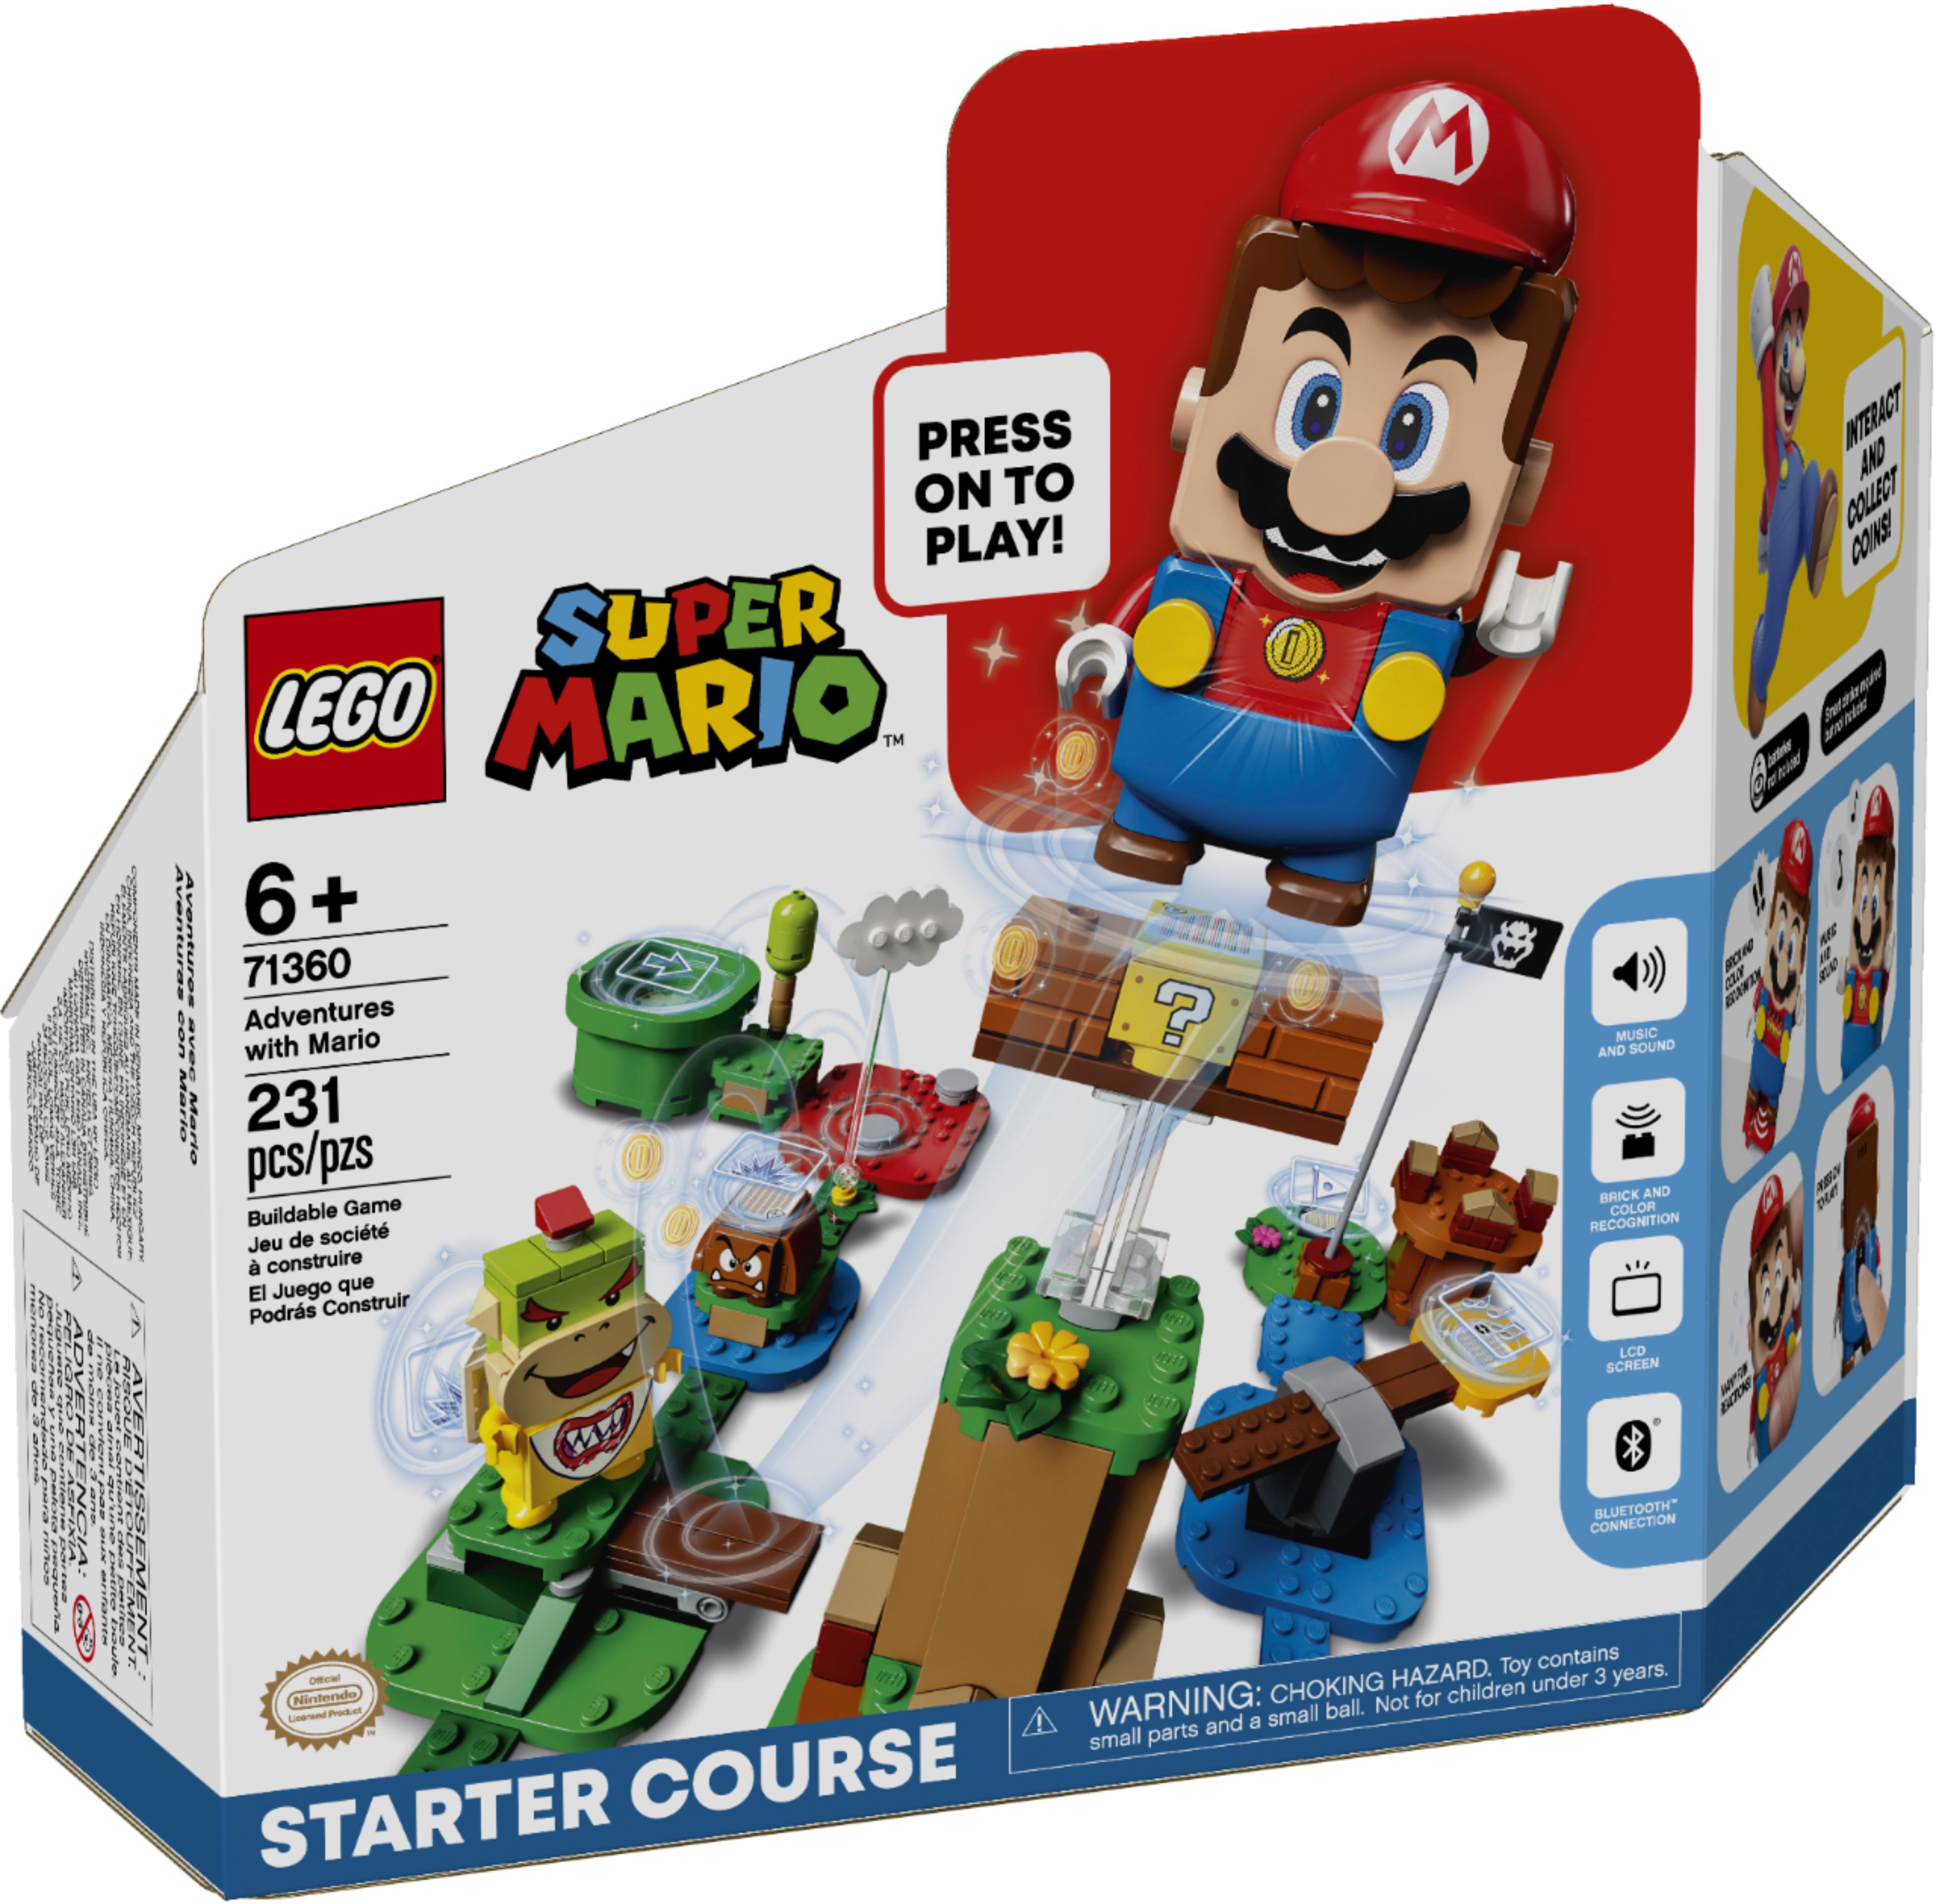 Super Mario Adventures with Mario Starter Course LEGO 71360 